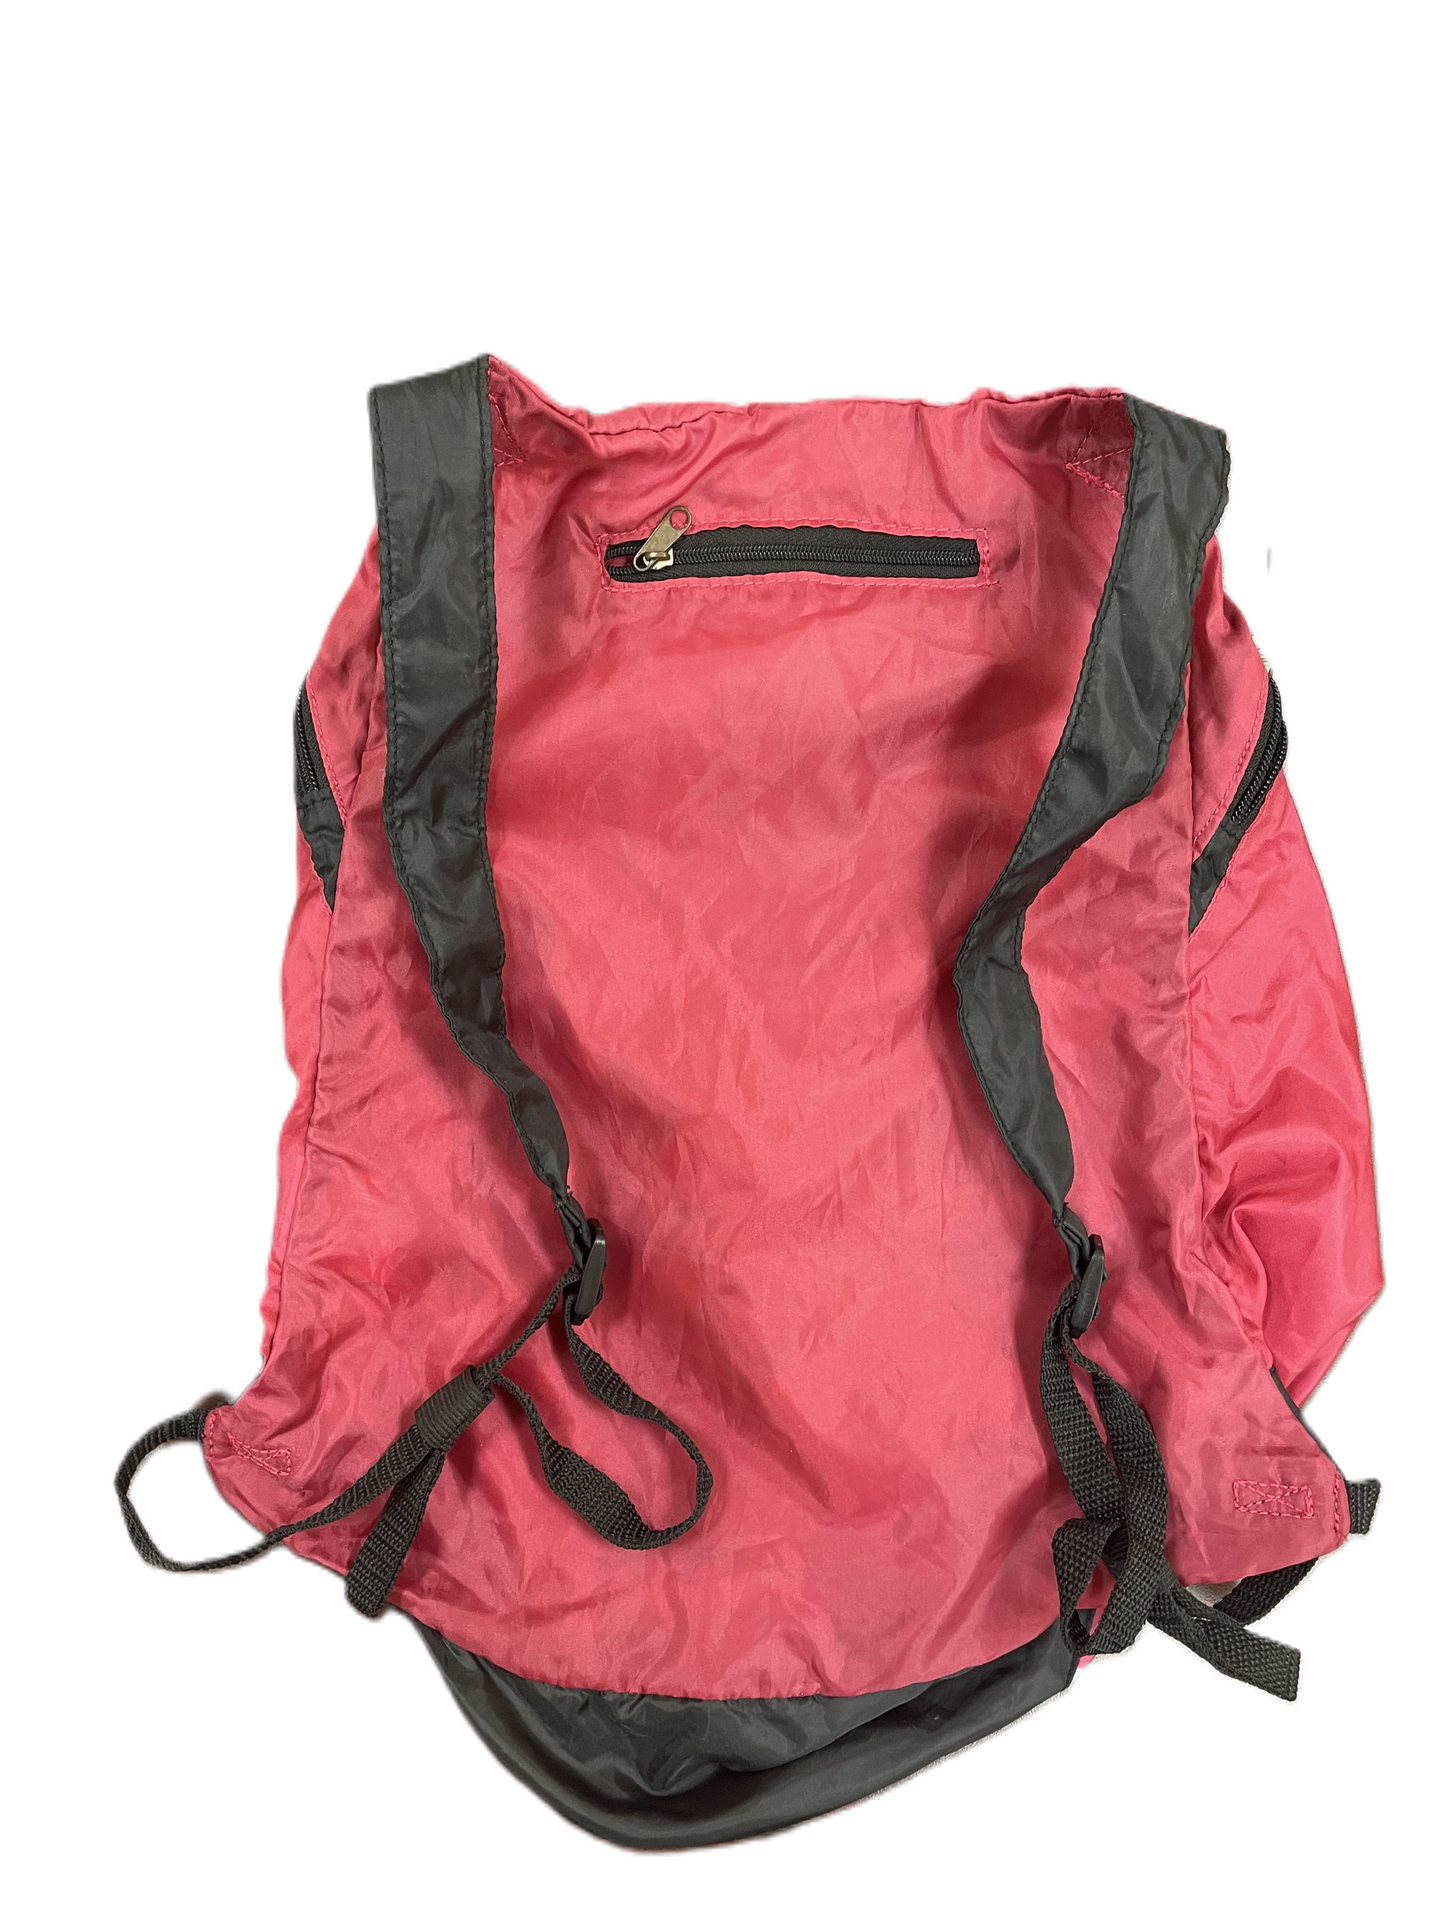 Backpack Designer By Desigual  Size: Medium